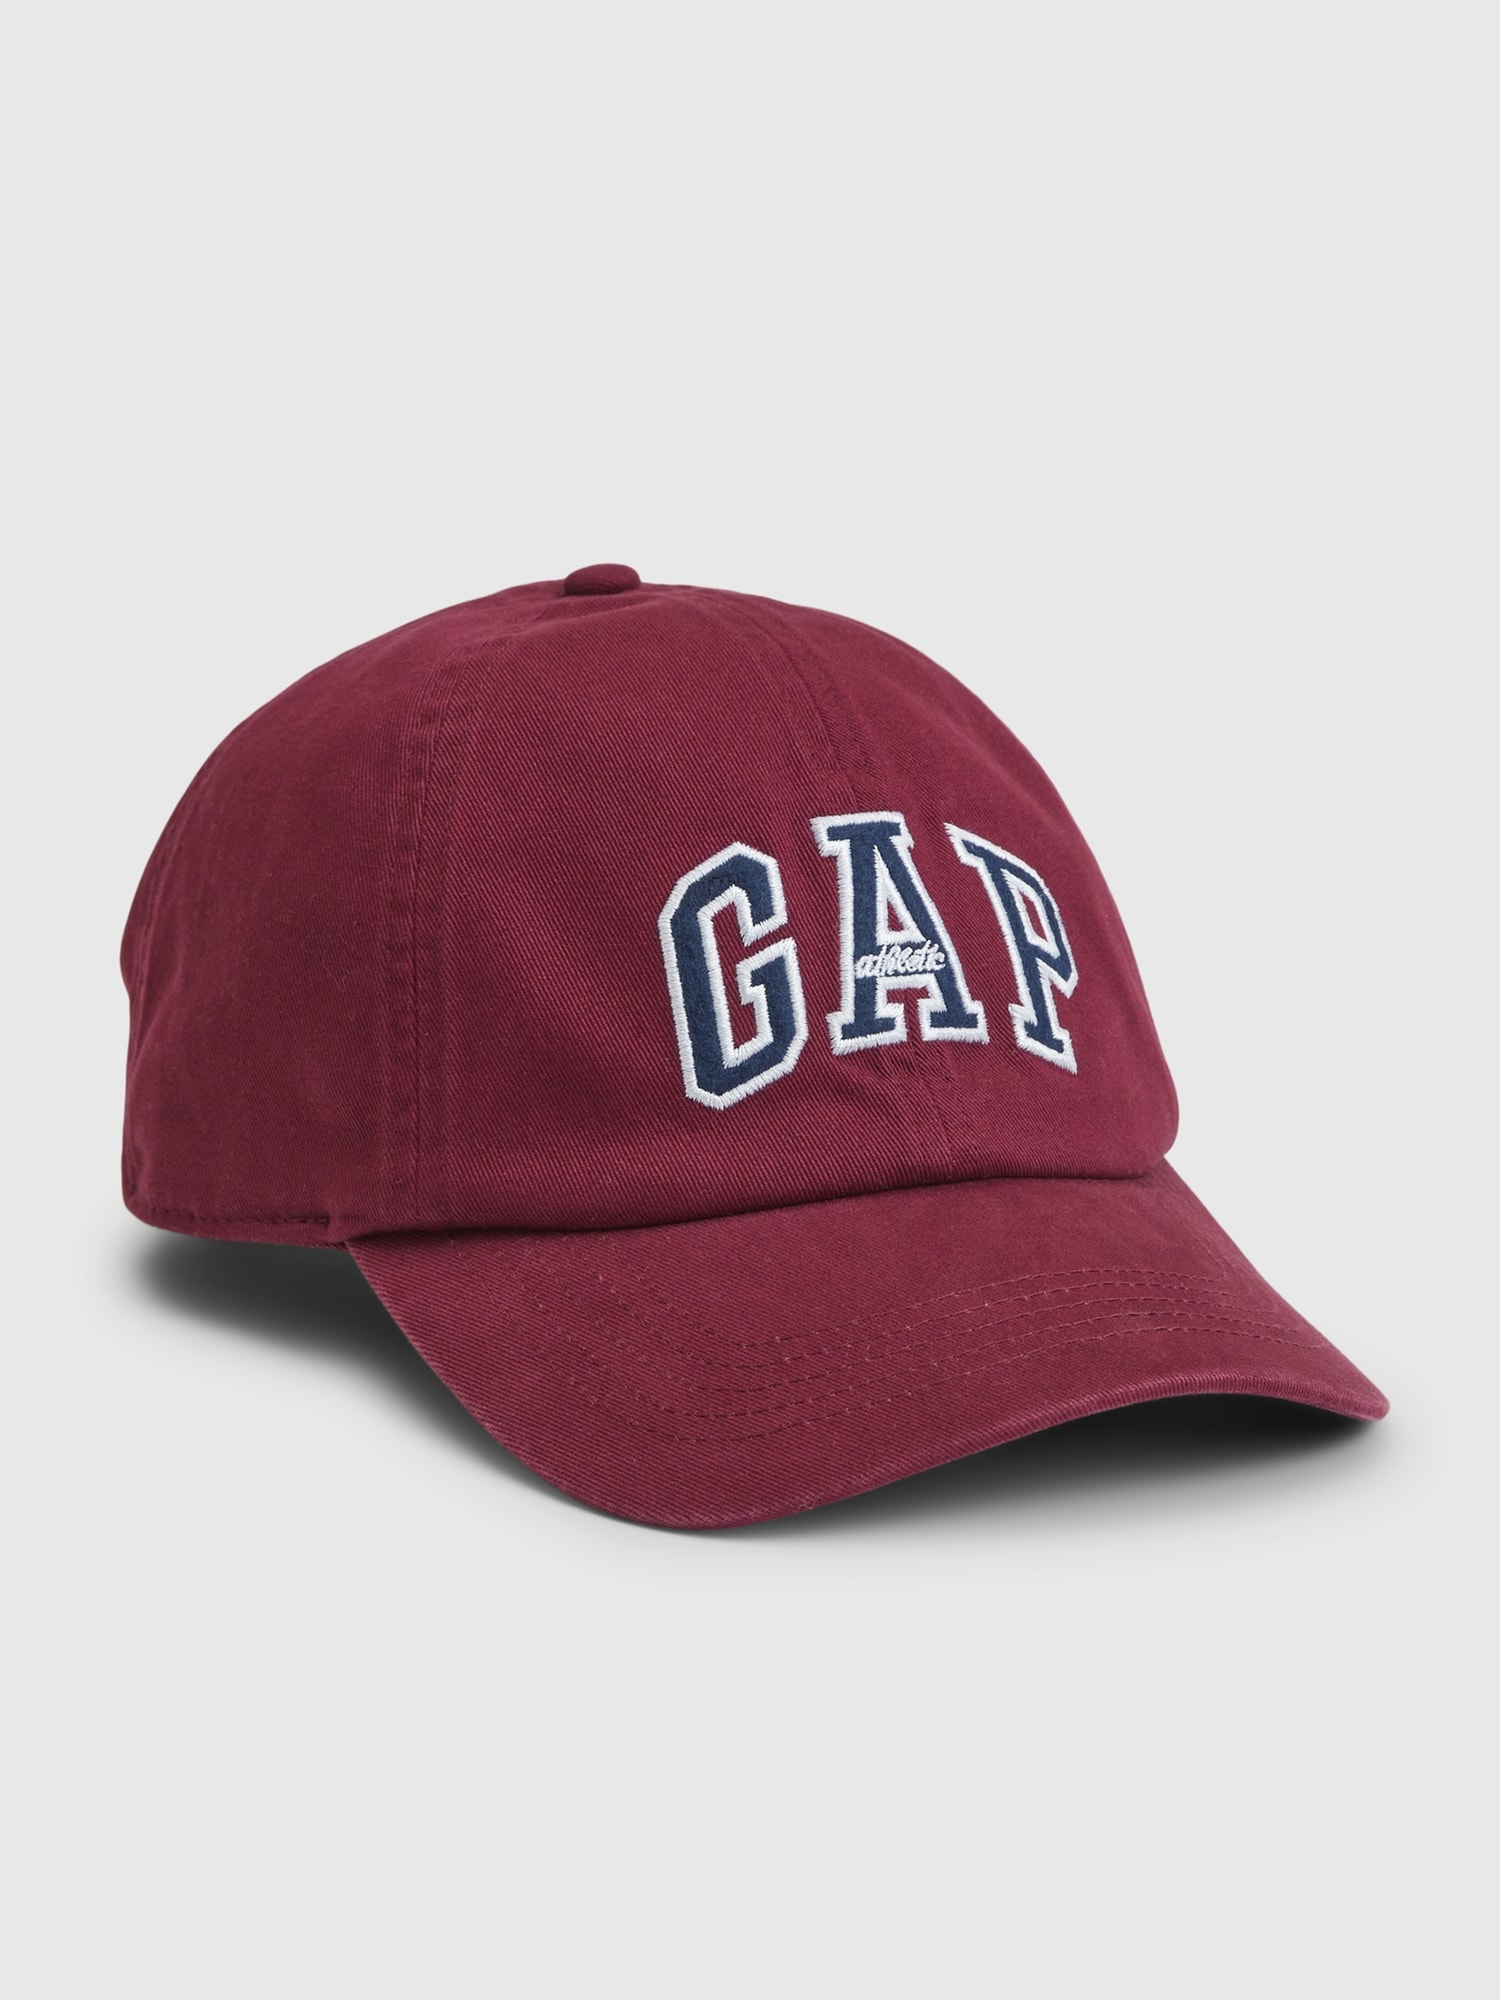 GAPロゴ キャップ - 帽子